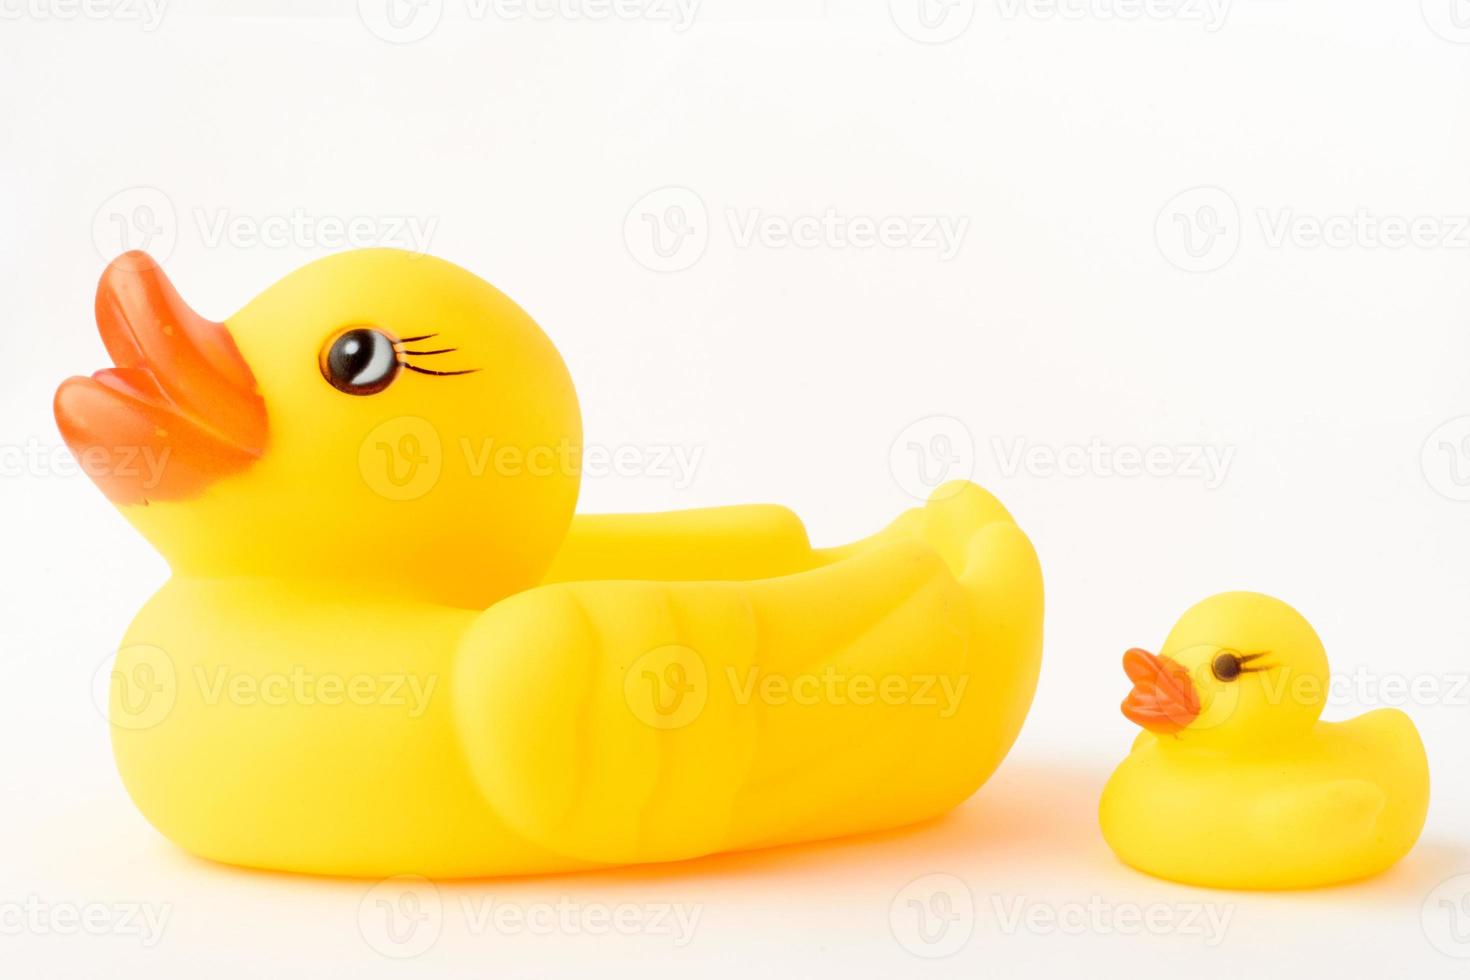 juguete de pato inflable amarillo con un pequeño patito. Aislado en un fondo blanco. foto